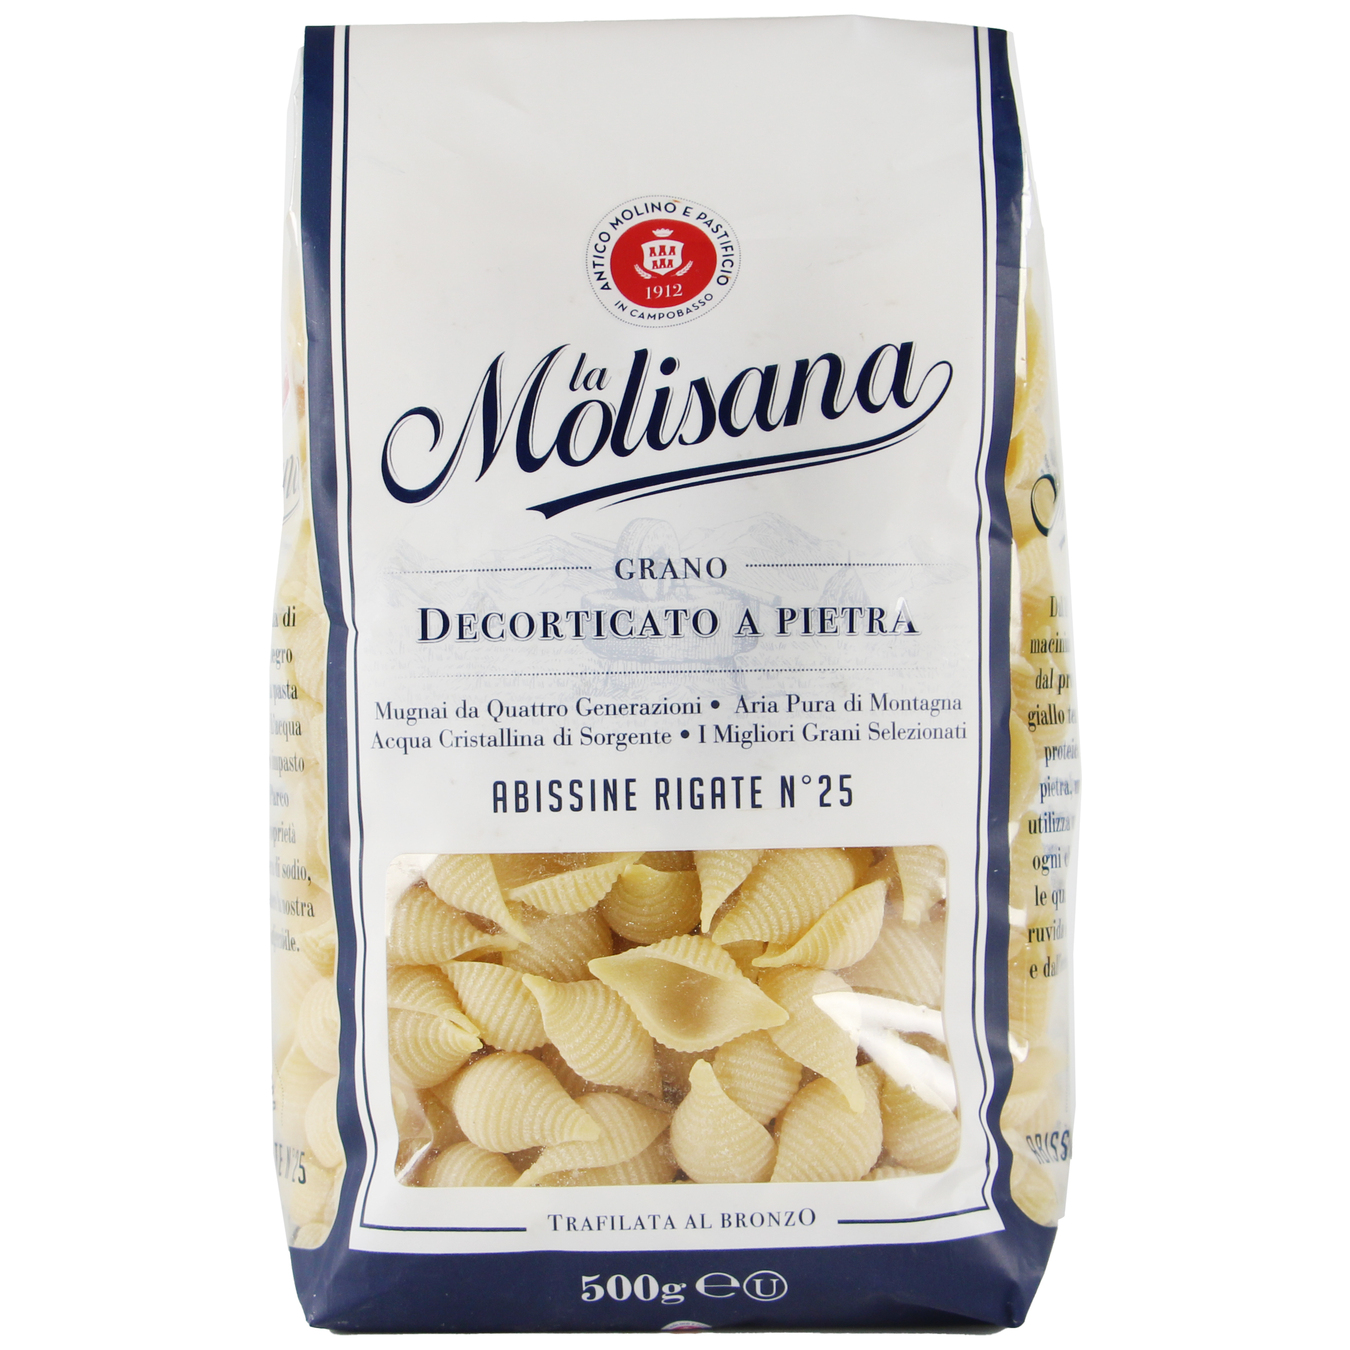 La Molisana №25 Abissine Rigate Pasta 500g